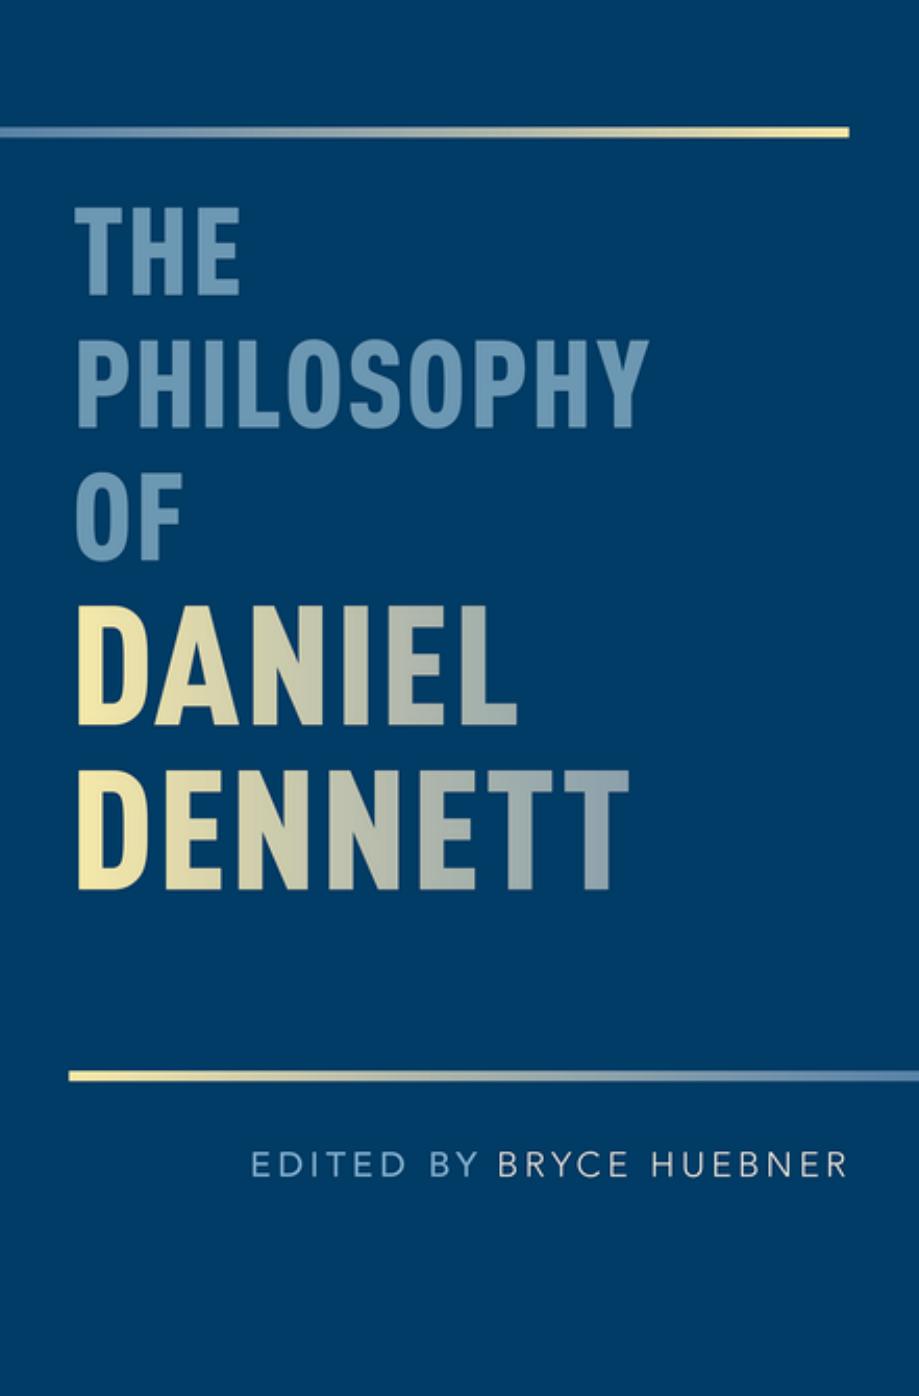 The Philosophy of Daniel Dennett